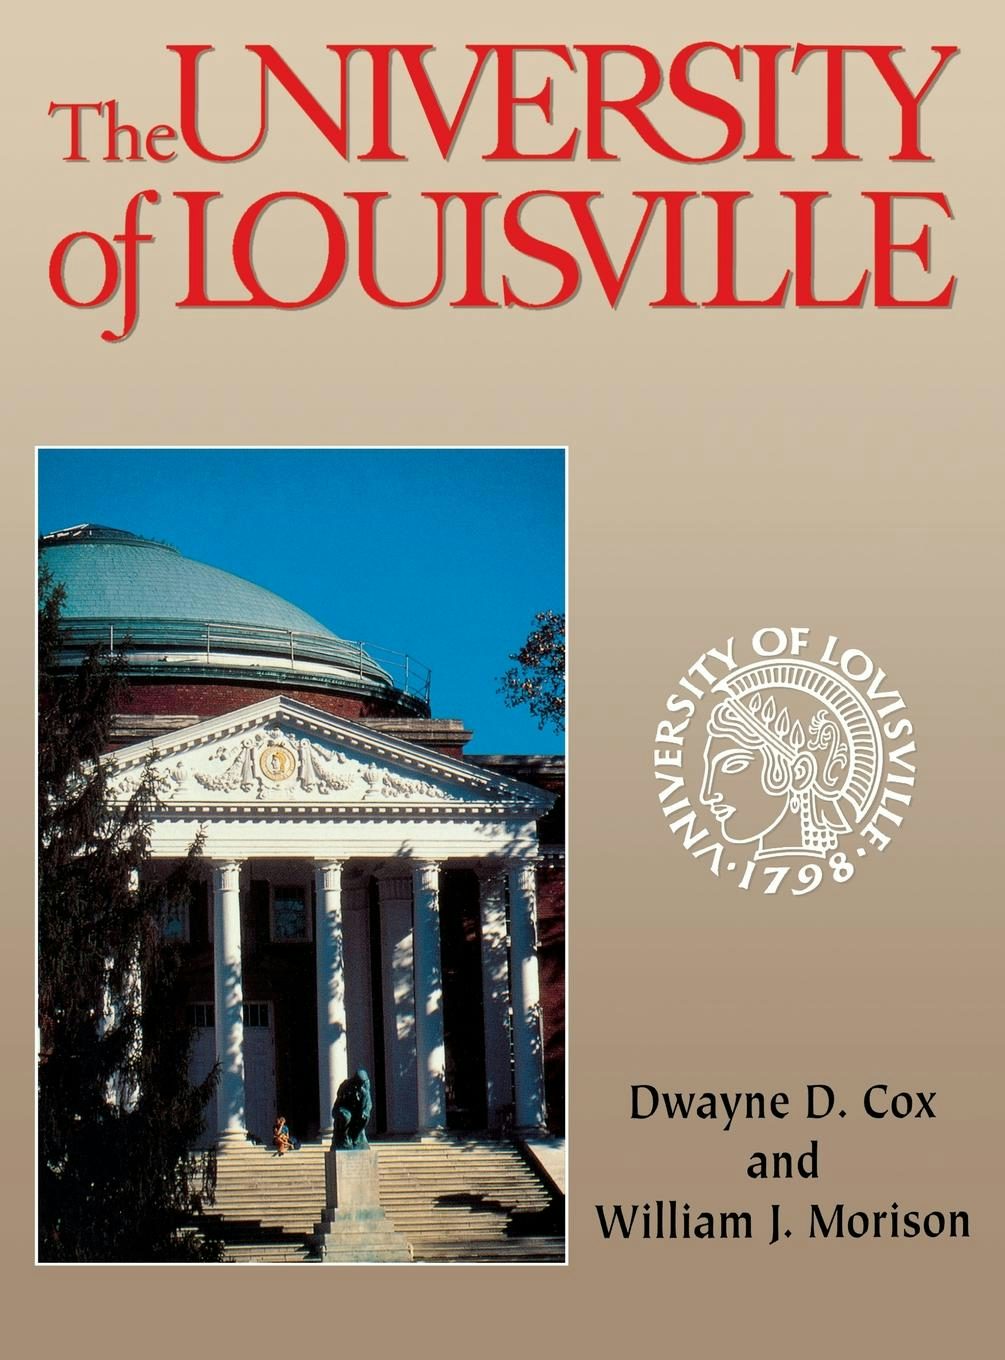 University of Louisville Reusable Cotton Face Mask-louisville 